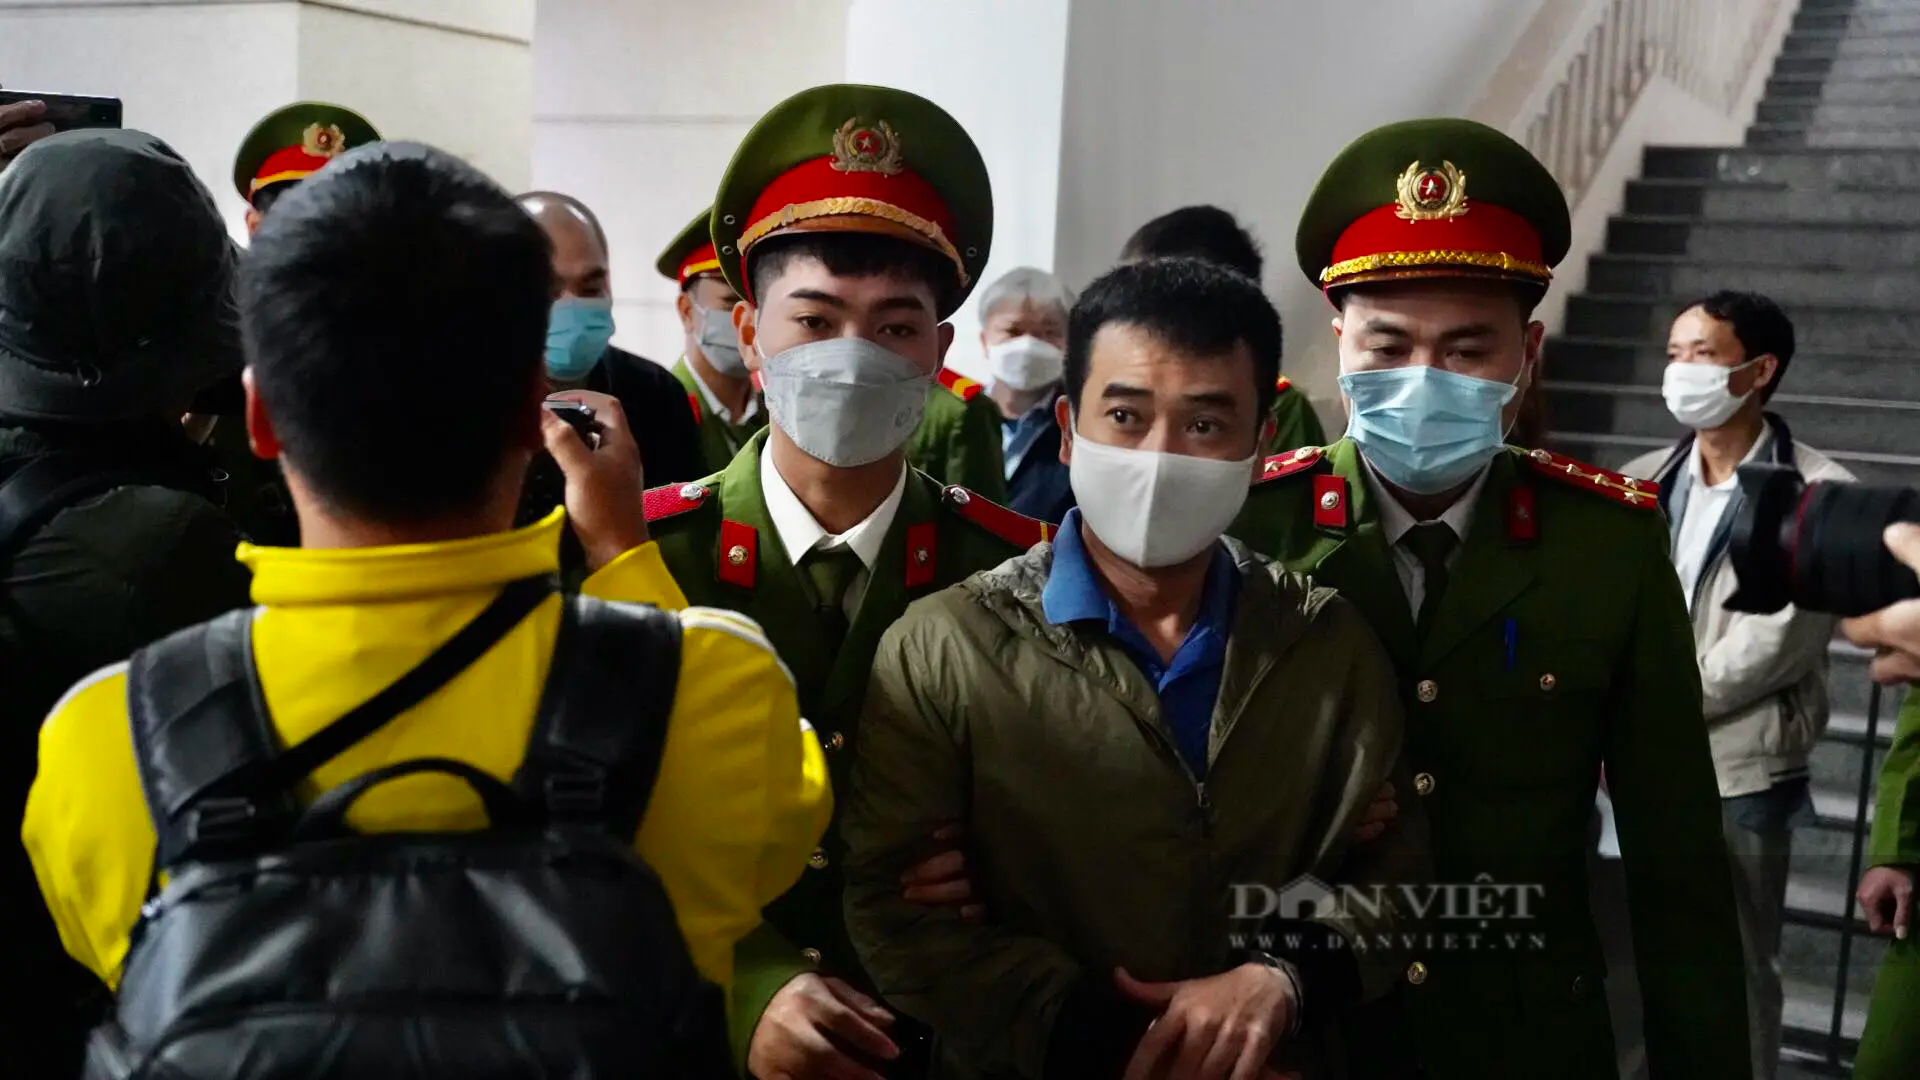 Hình ảnh đầu tiên dẫn giải cựu Bộ trưởng Chu Ngọc Anh, Nguyễn Thanh Long và các bị cáo đến toà vụ Việt Á- Ảnh 5.